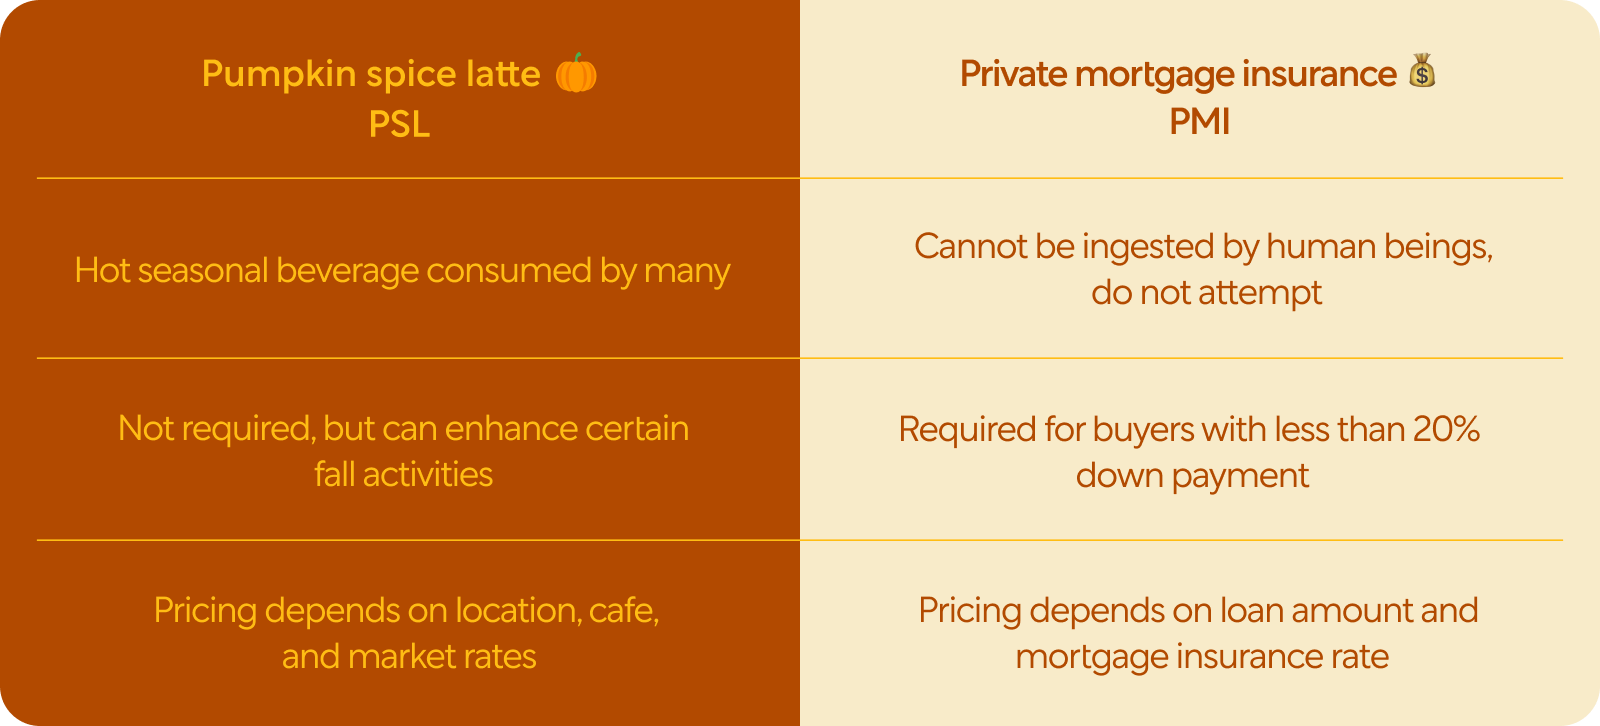 "Pumpkin spice latte vs private mortgage insurance chart